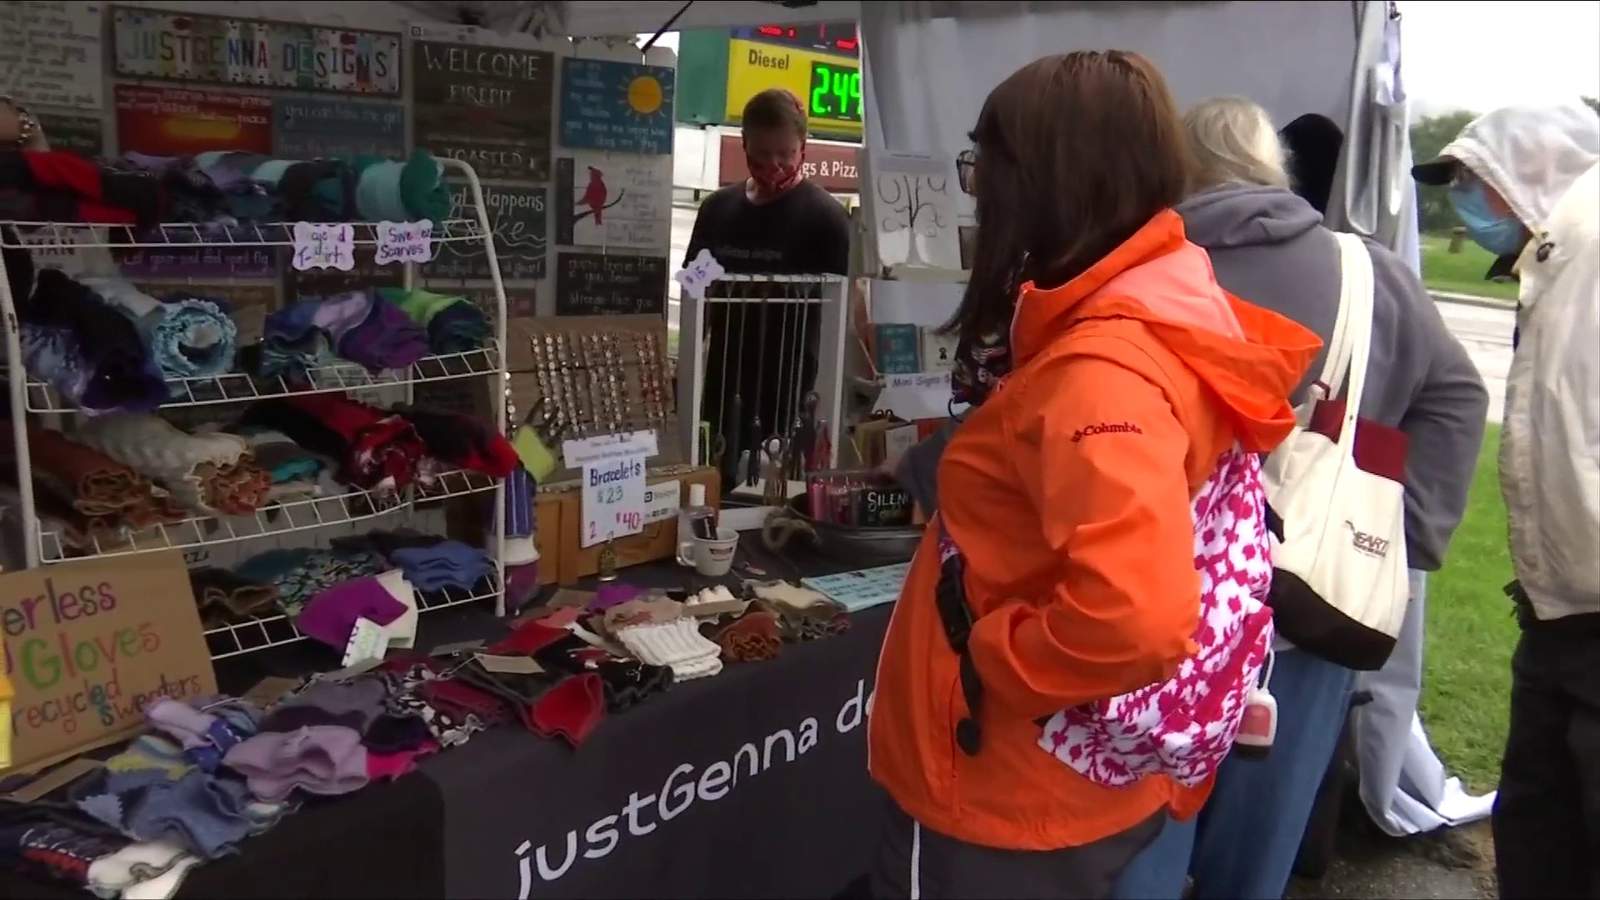 Vendors set up in Salem for alternative to Olde Salem Days